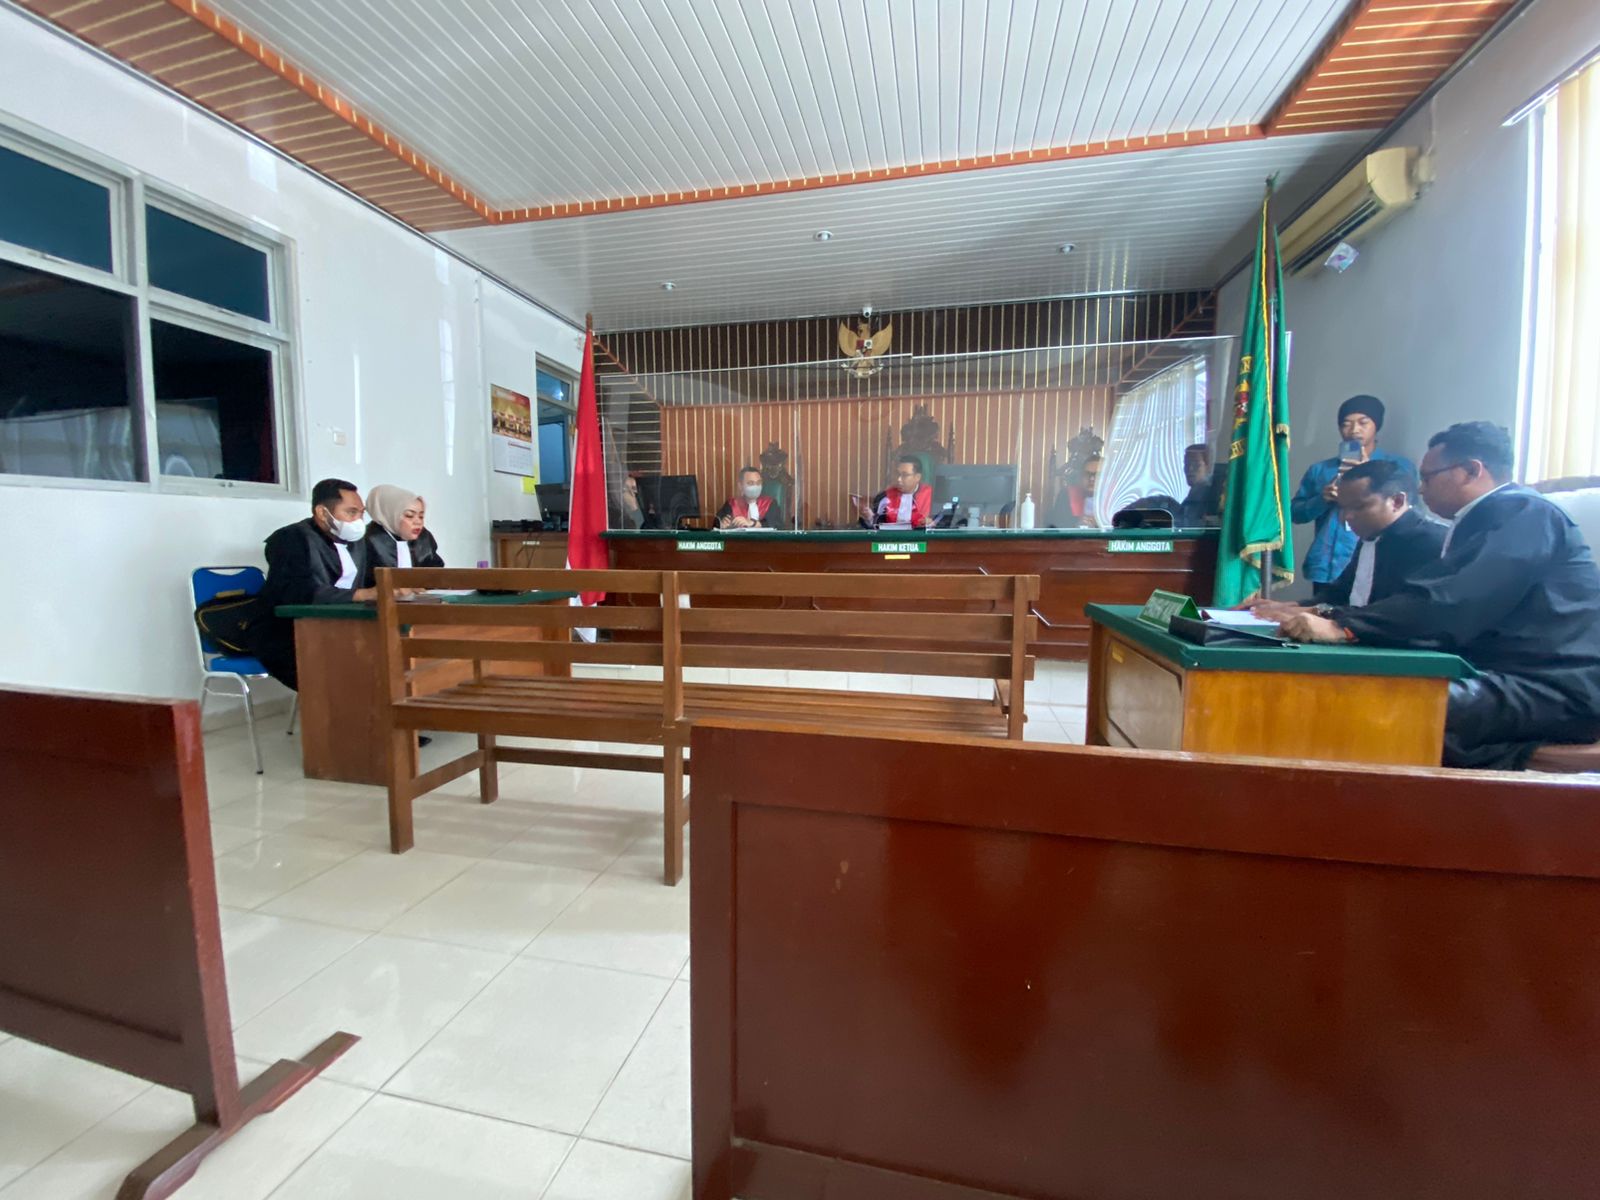 Lolos dari Tuntutan Mati, Mantan Kanit Provost Dituntut Penjara Seumur Hidup